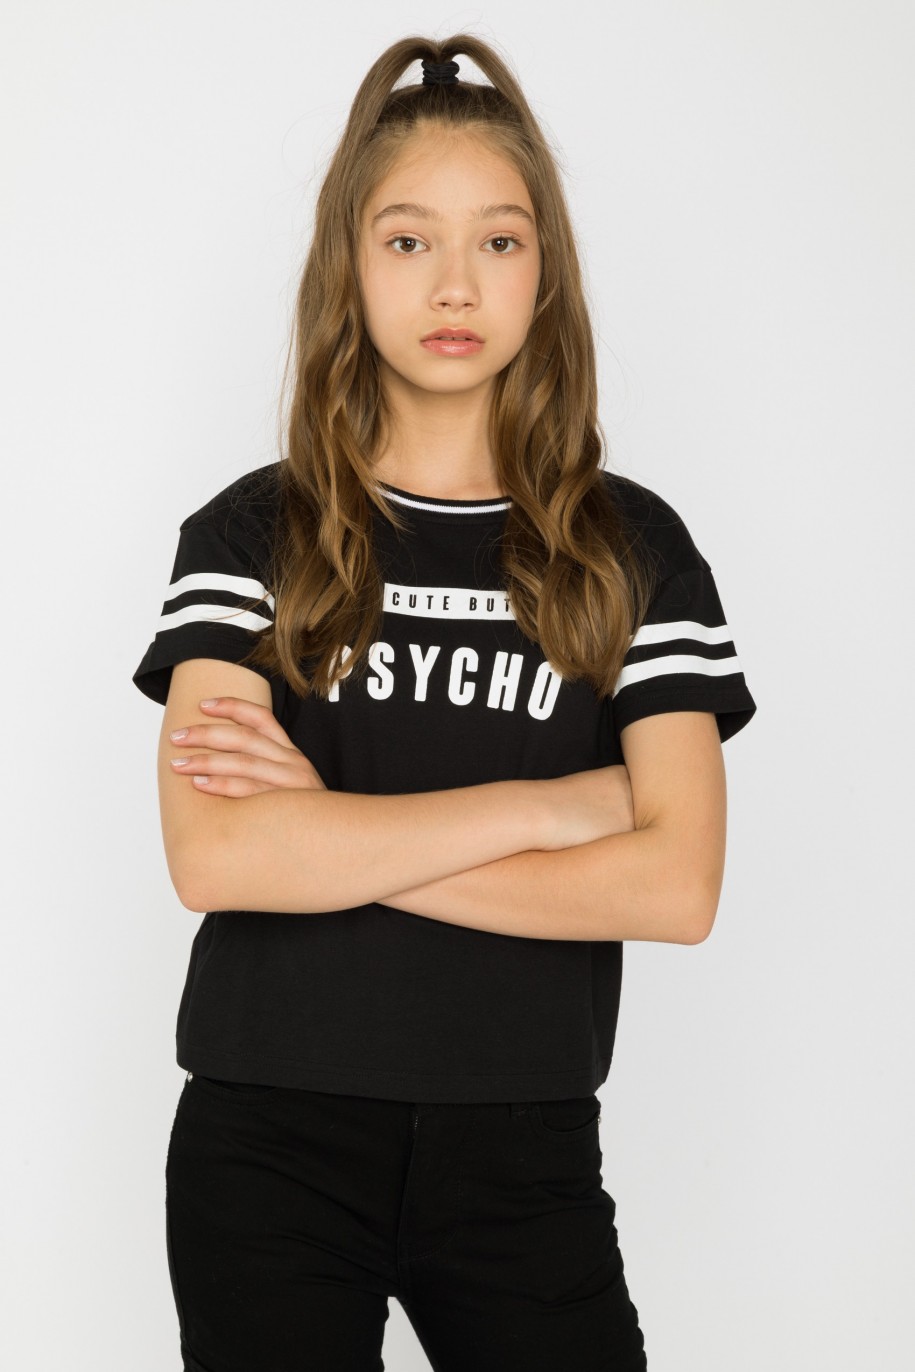 Czarny t-shirt dla dziewczyny z ozdobnymi rękawami CUTE BY PSYCHO - 28834